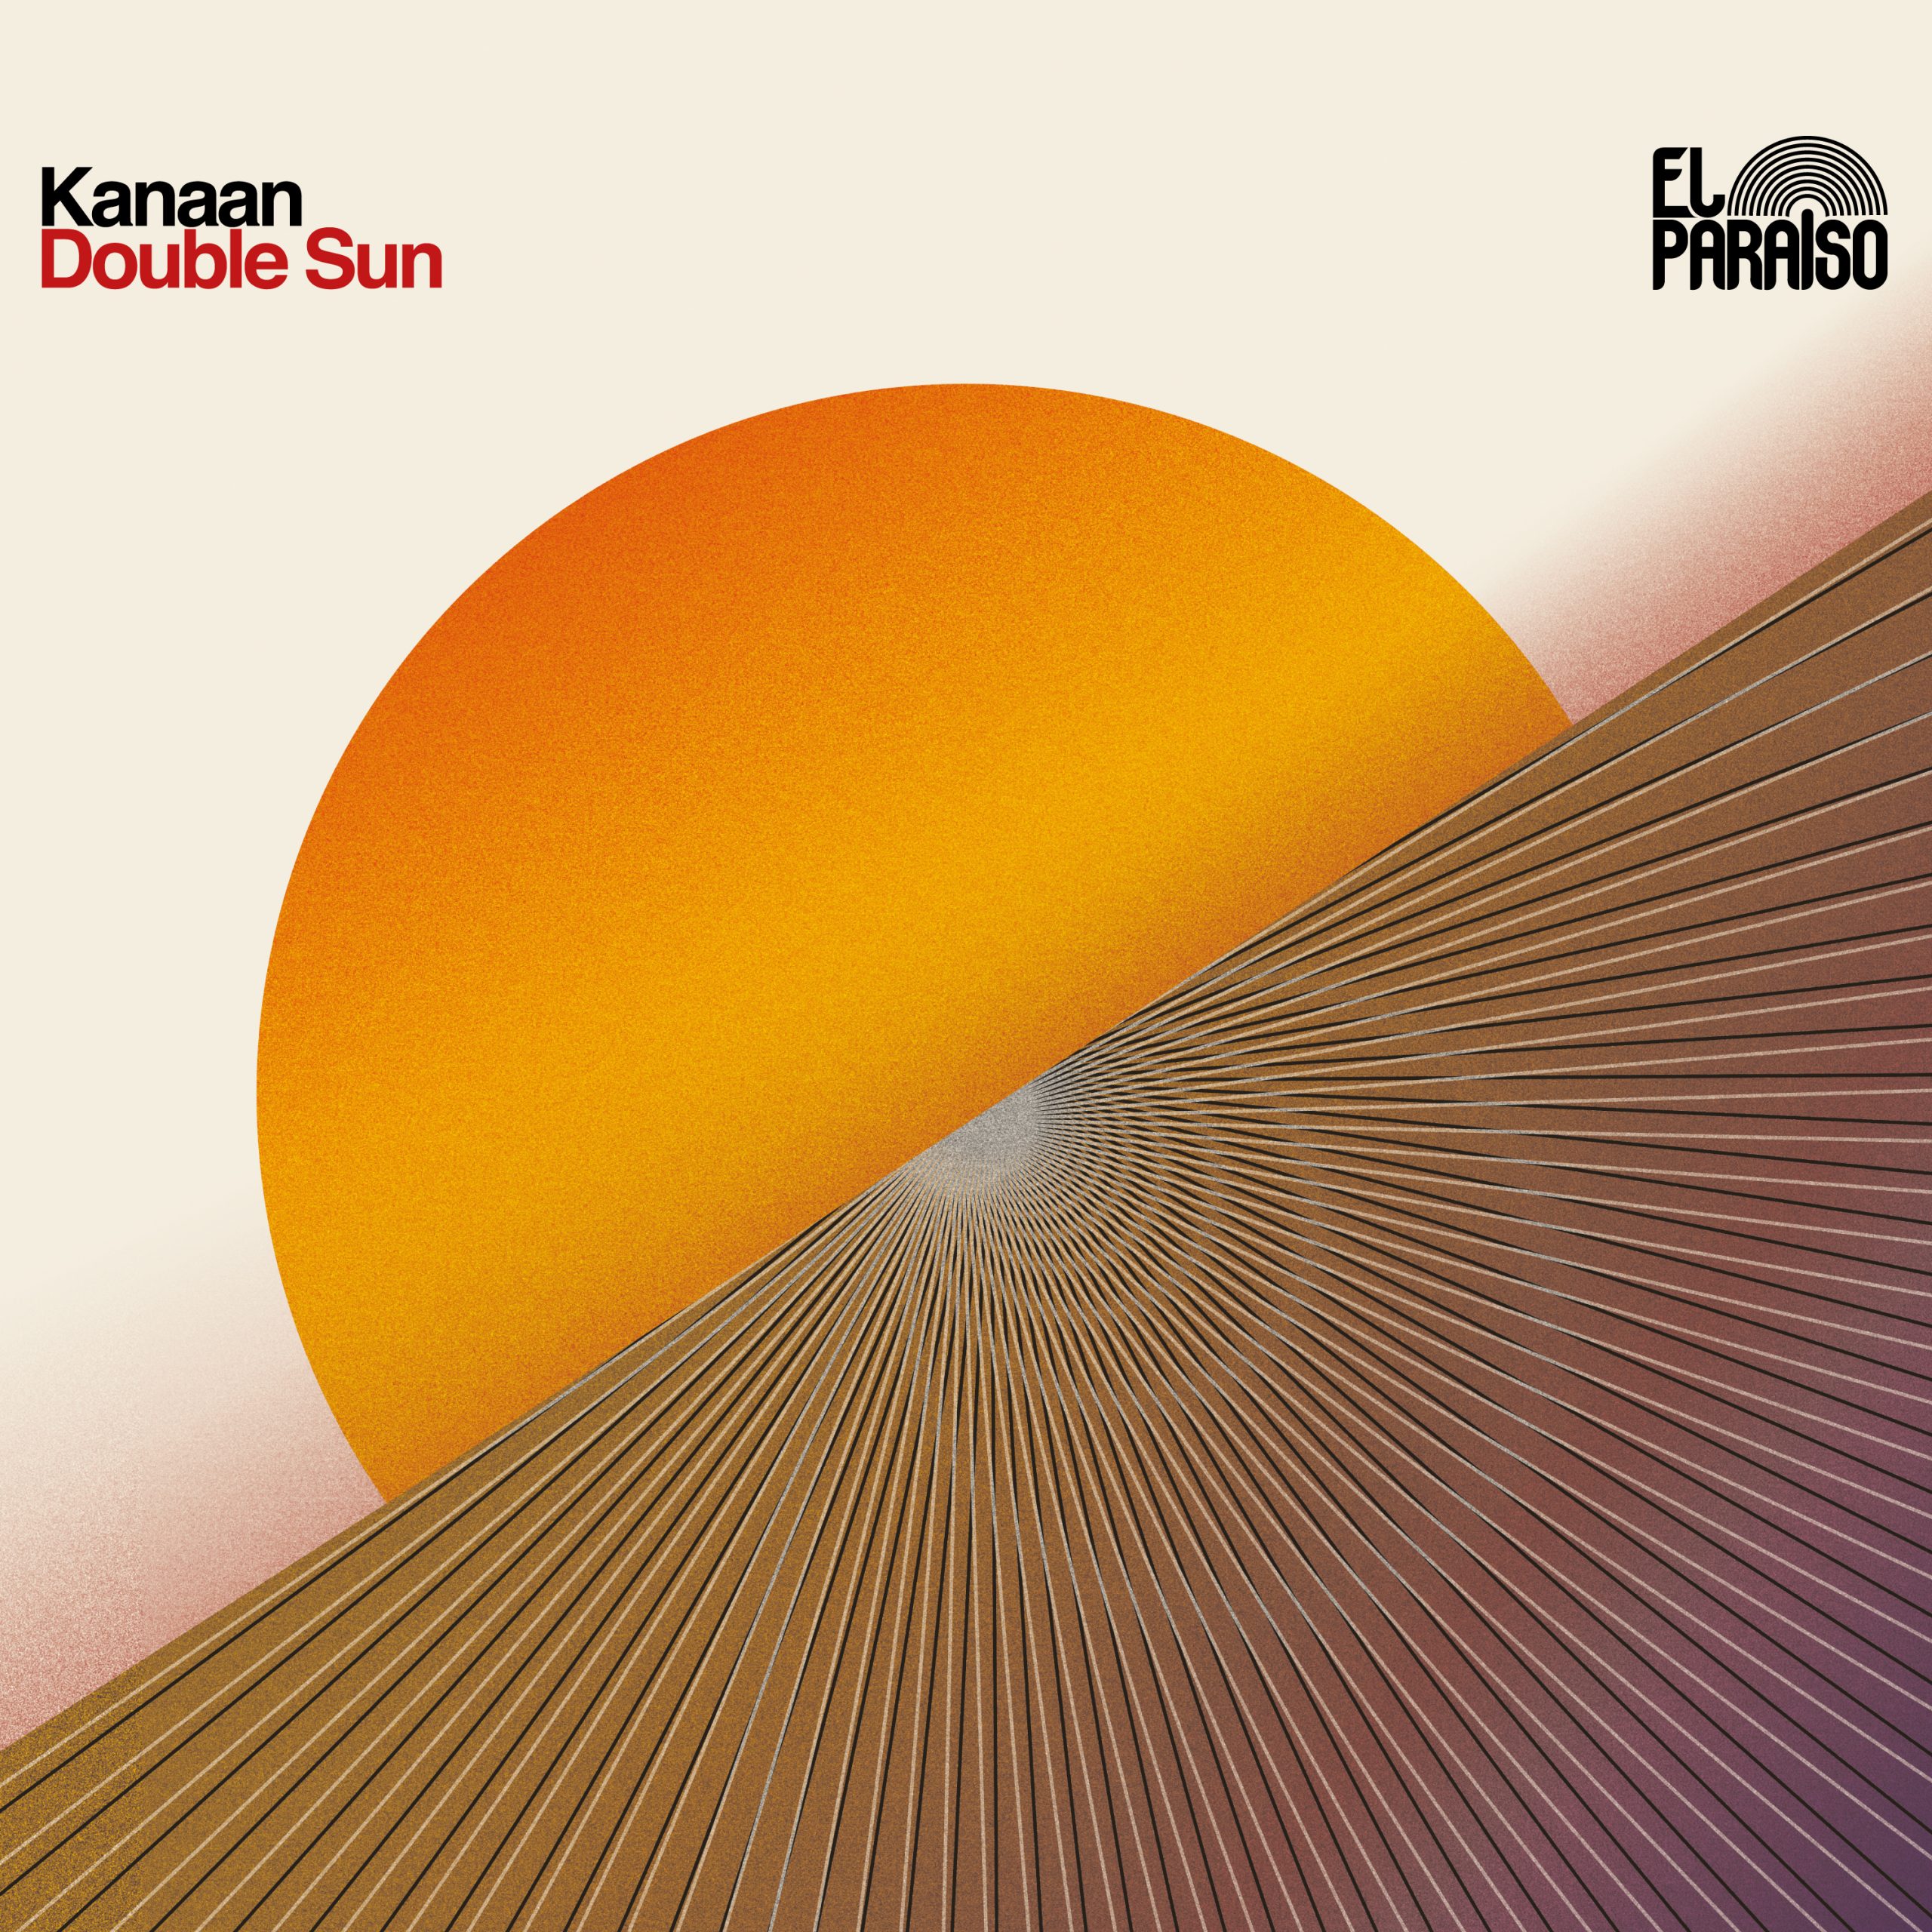 Kanaan "Double Sun" LP